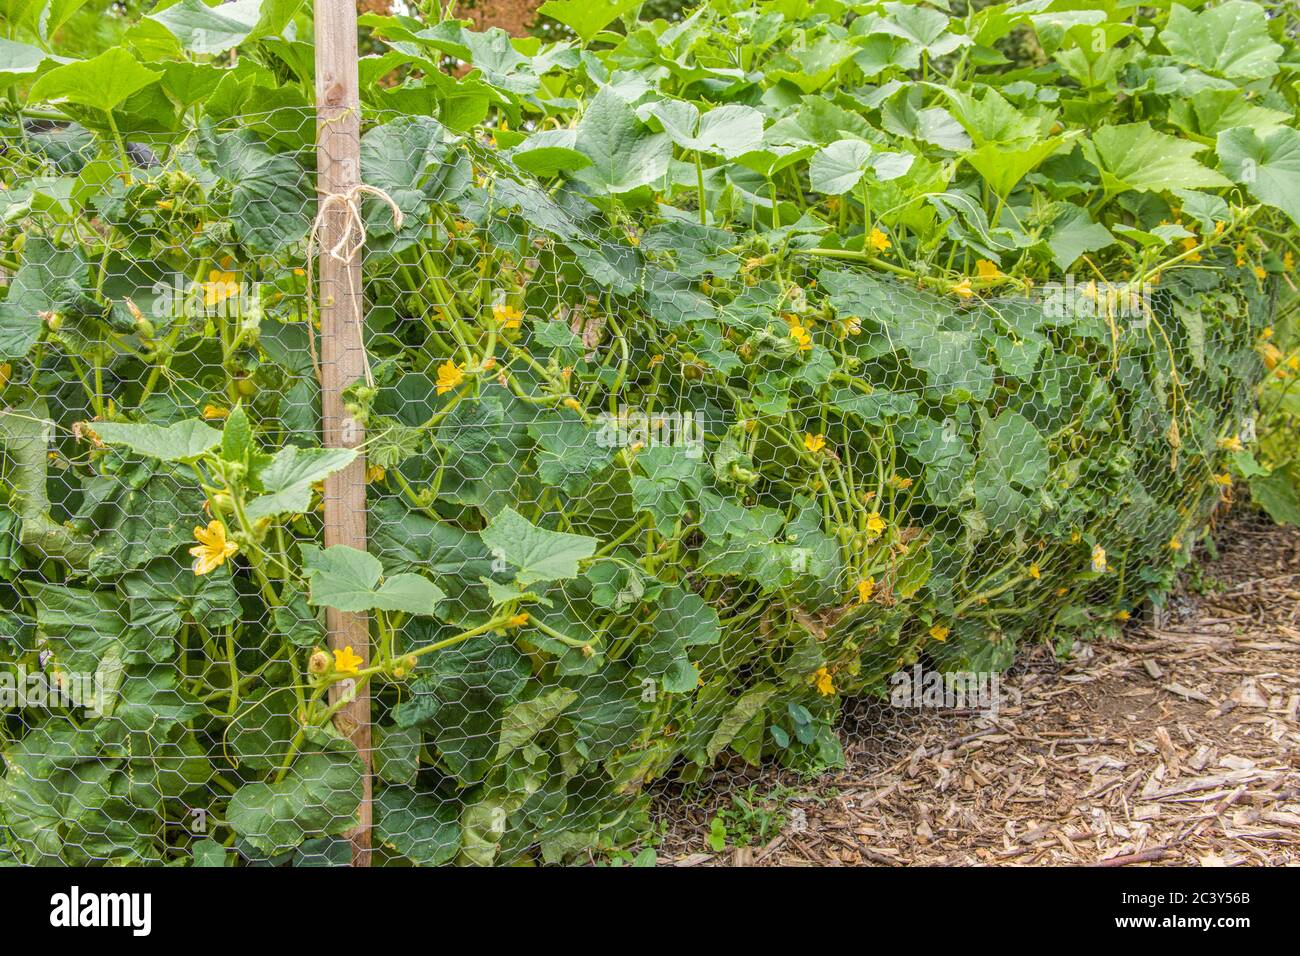 Trombocino Squash Pflanzen in einem Gemüsegarten in Issaquah, Washington, USA gehalten durch Windschnur Zaun. Dieser italienische Sommer Squash ist ein berühmter Ital Stockfoto